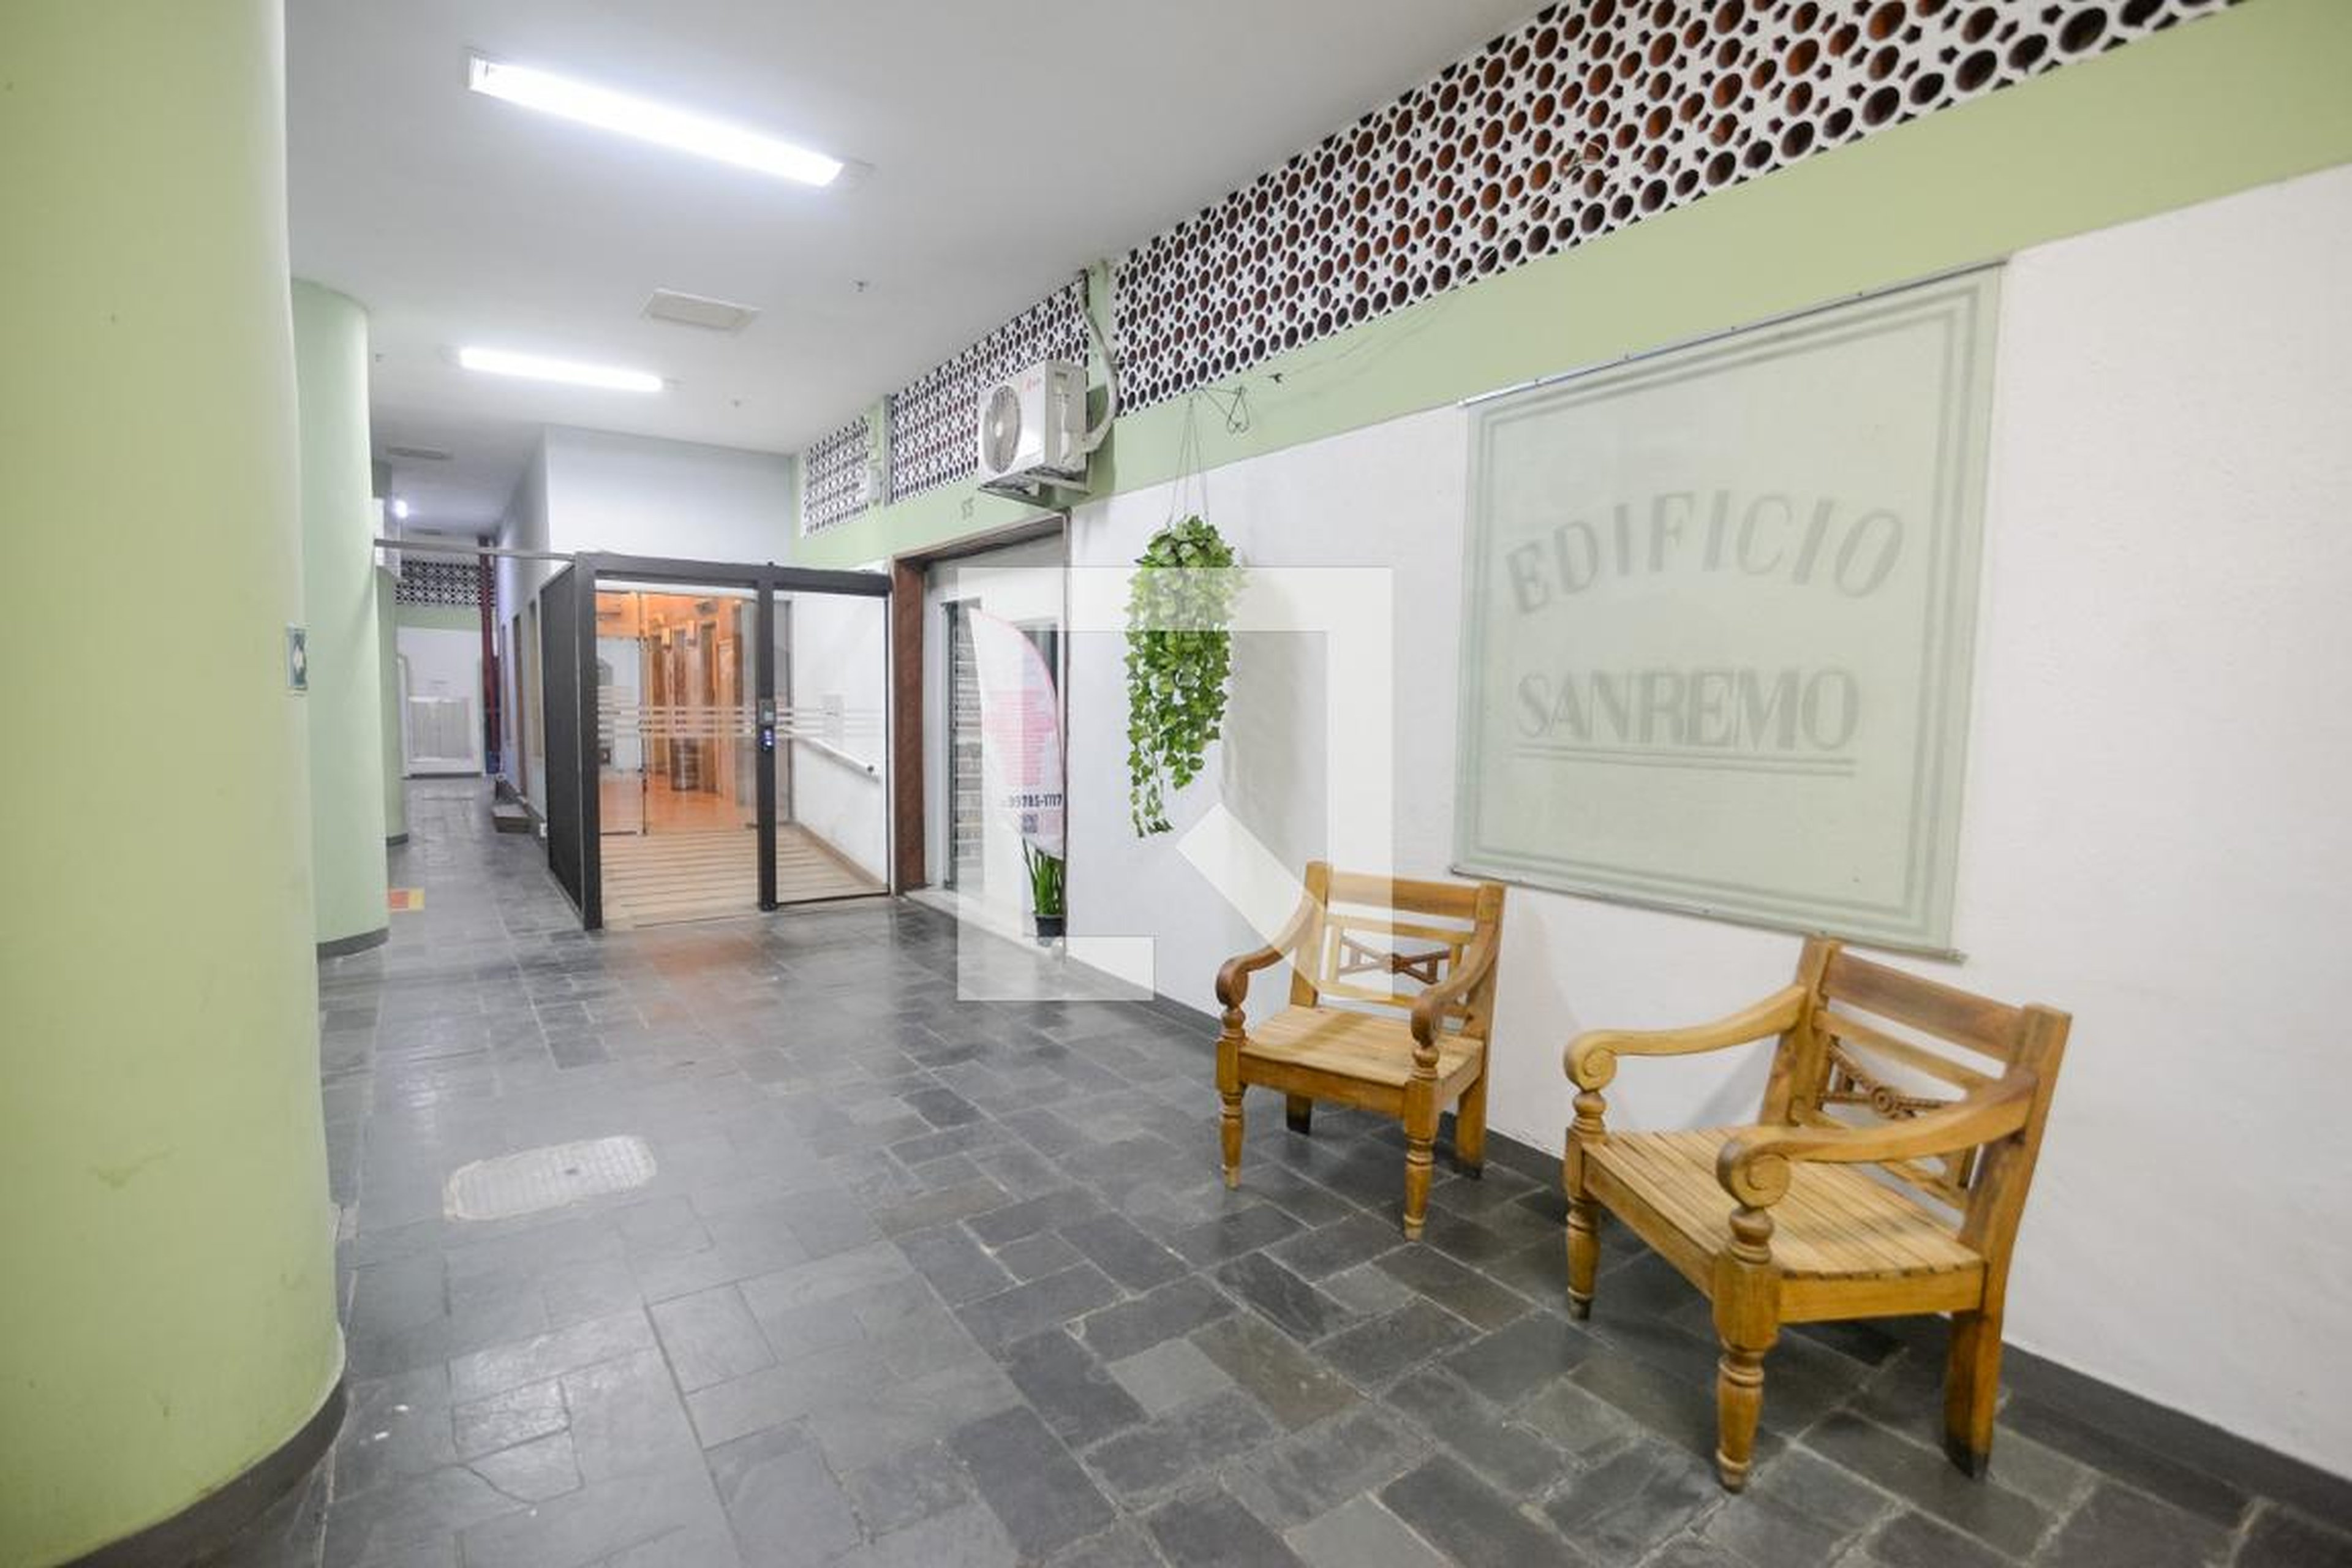 Hall de Entrada - San Remo